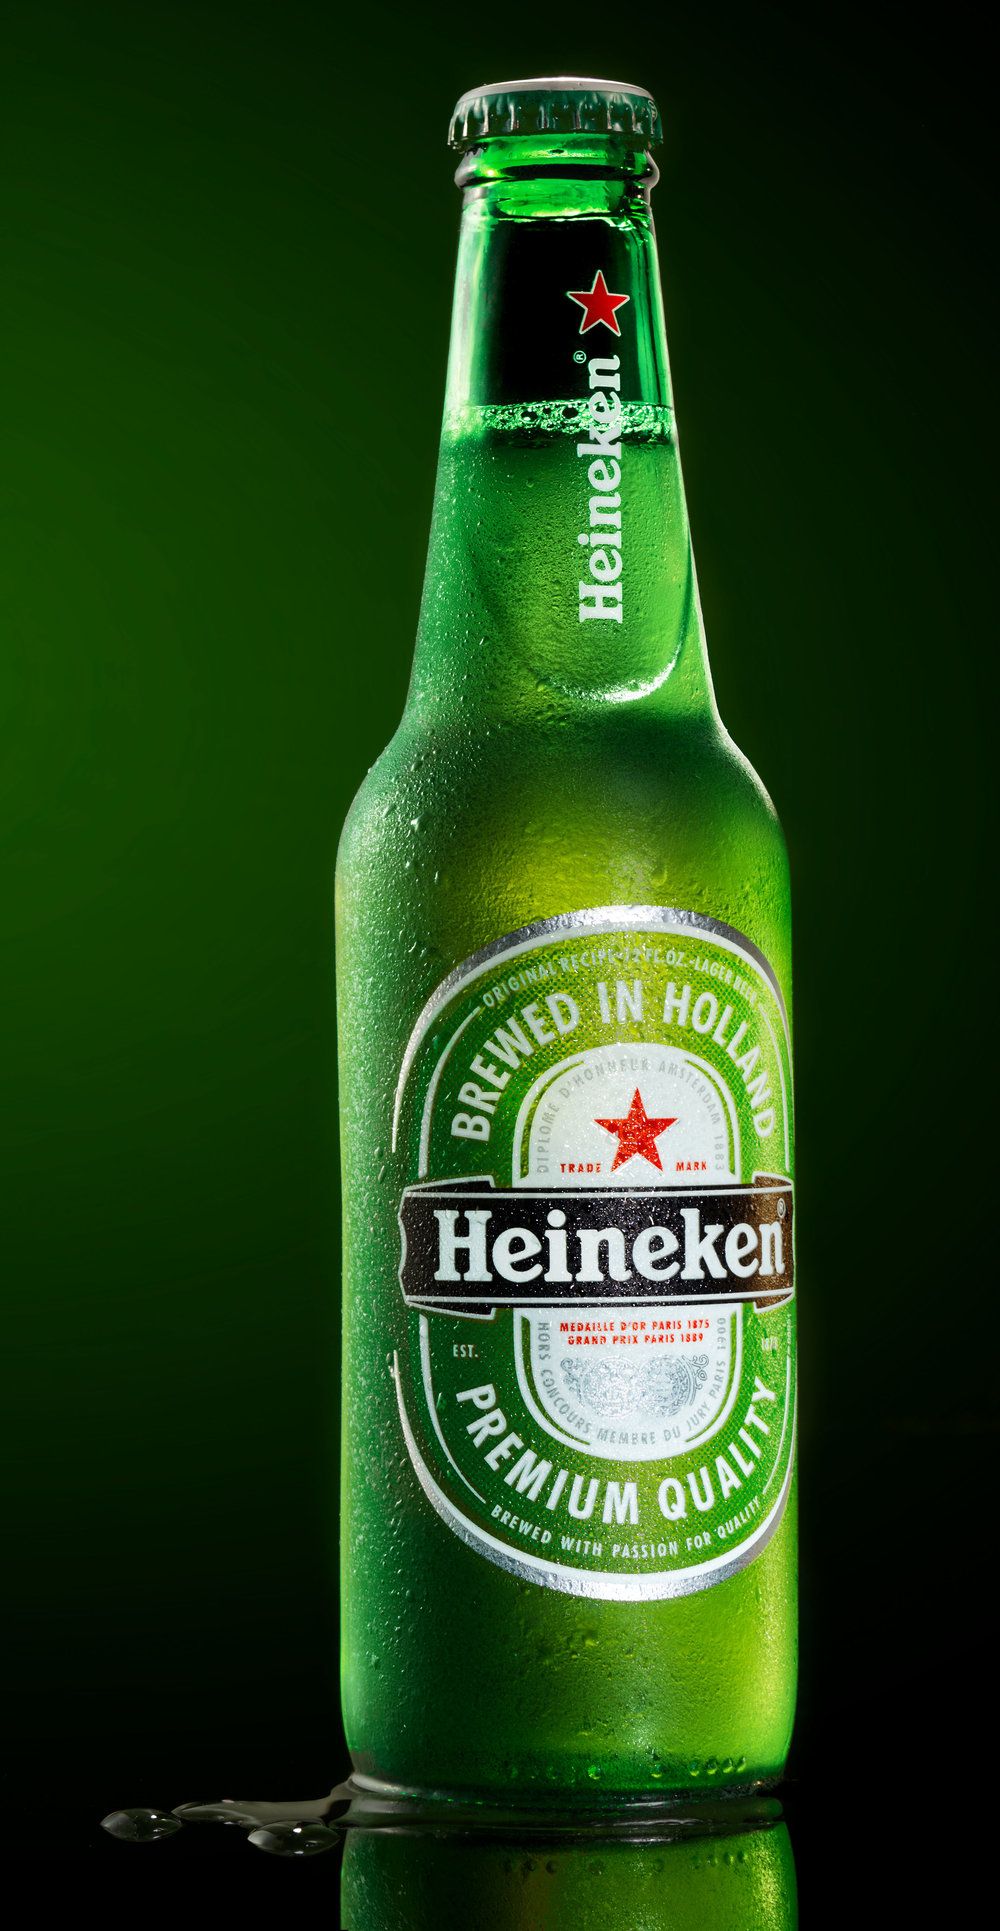 Heineken. Pôster de cerveja, Logos de cerveja, Heineken